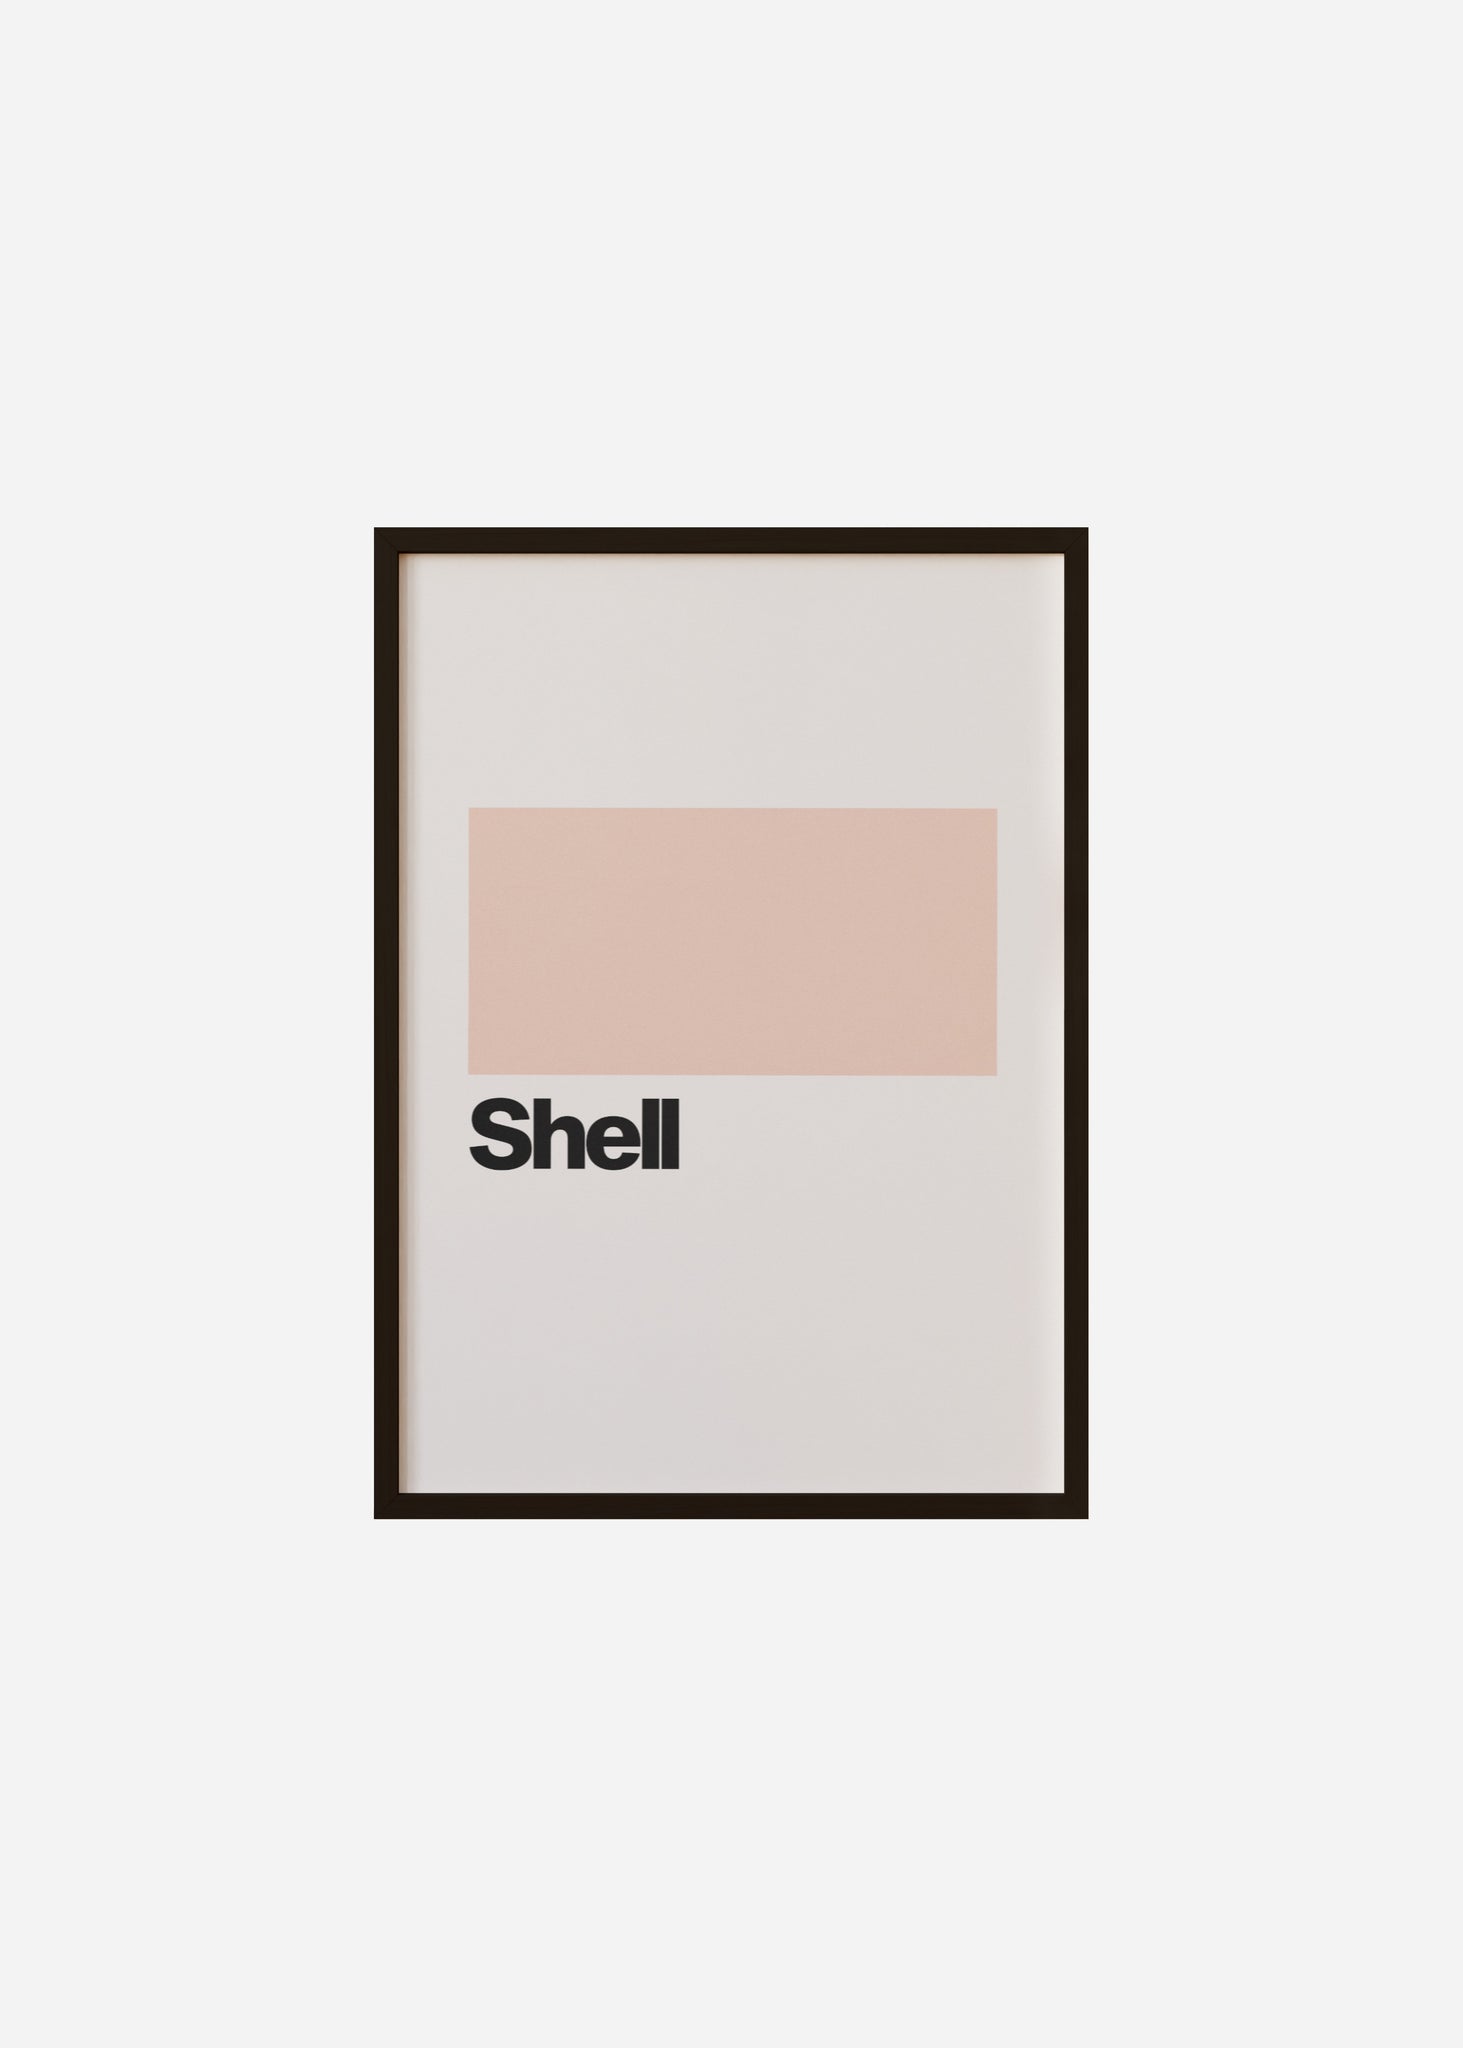 Shell Framed Print